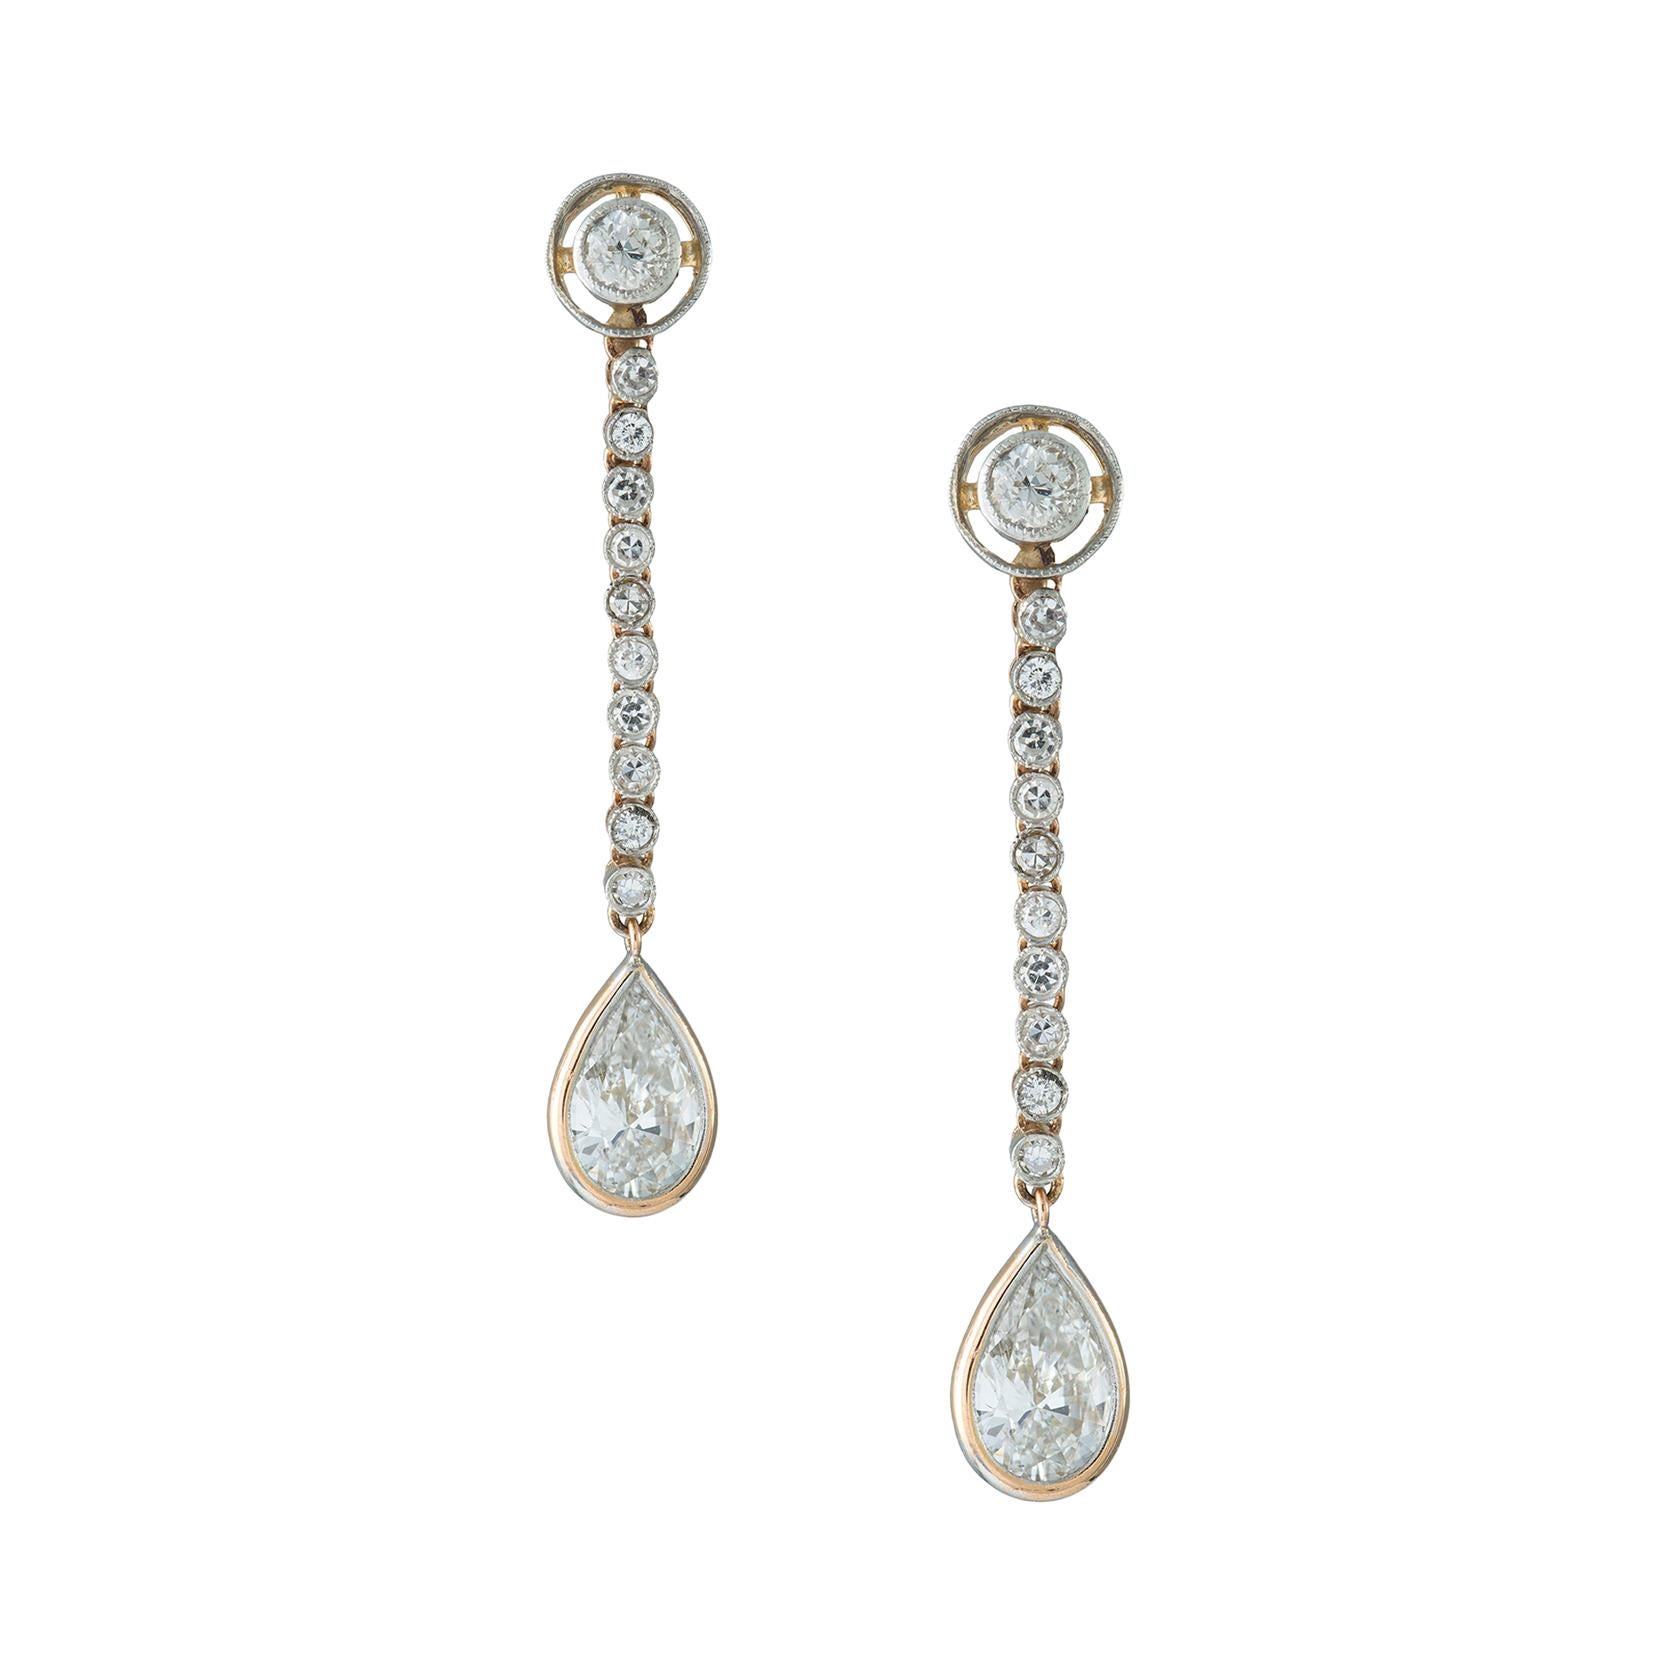 GCS Certified Diamond Drop Earrings